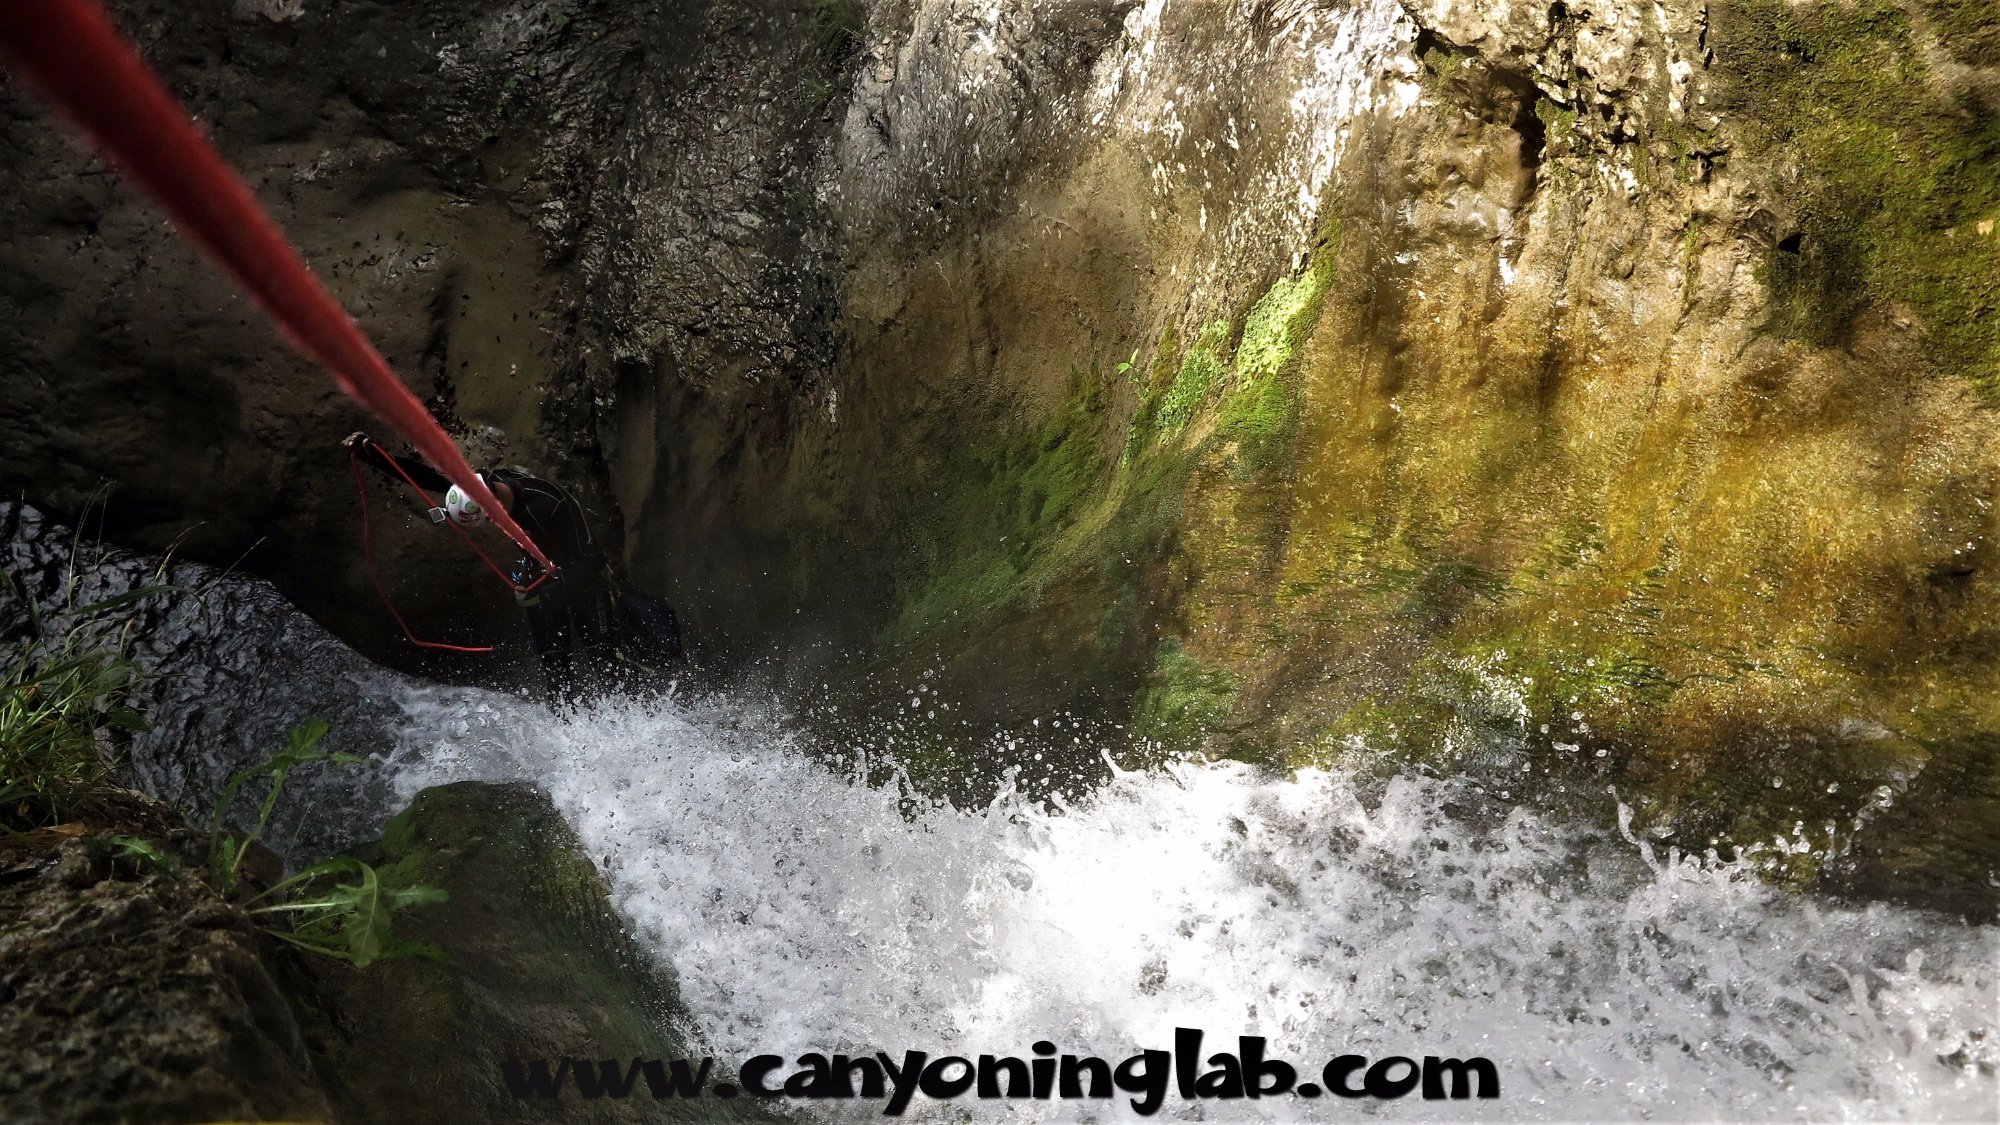 Canyoning Lab Enjoy Water